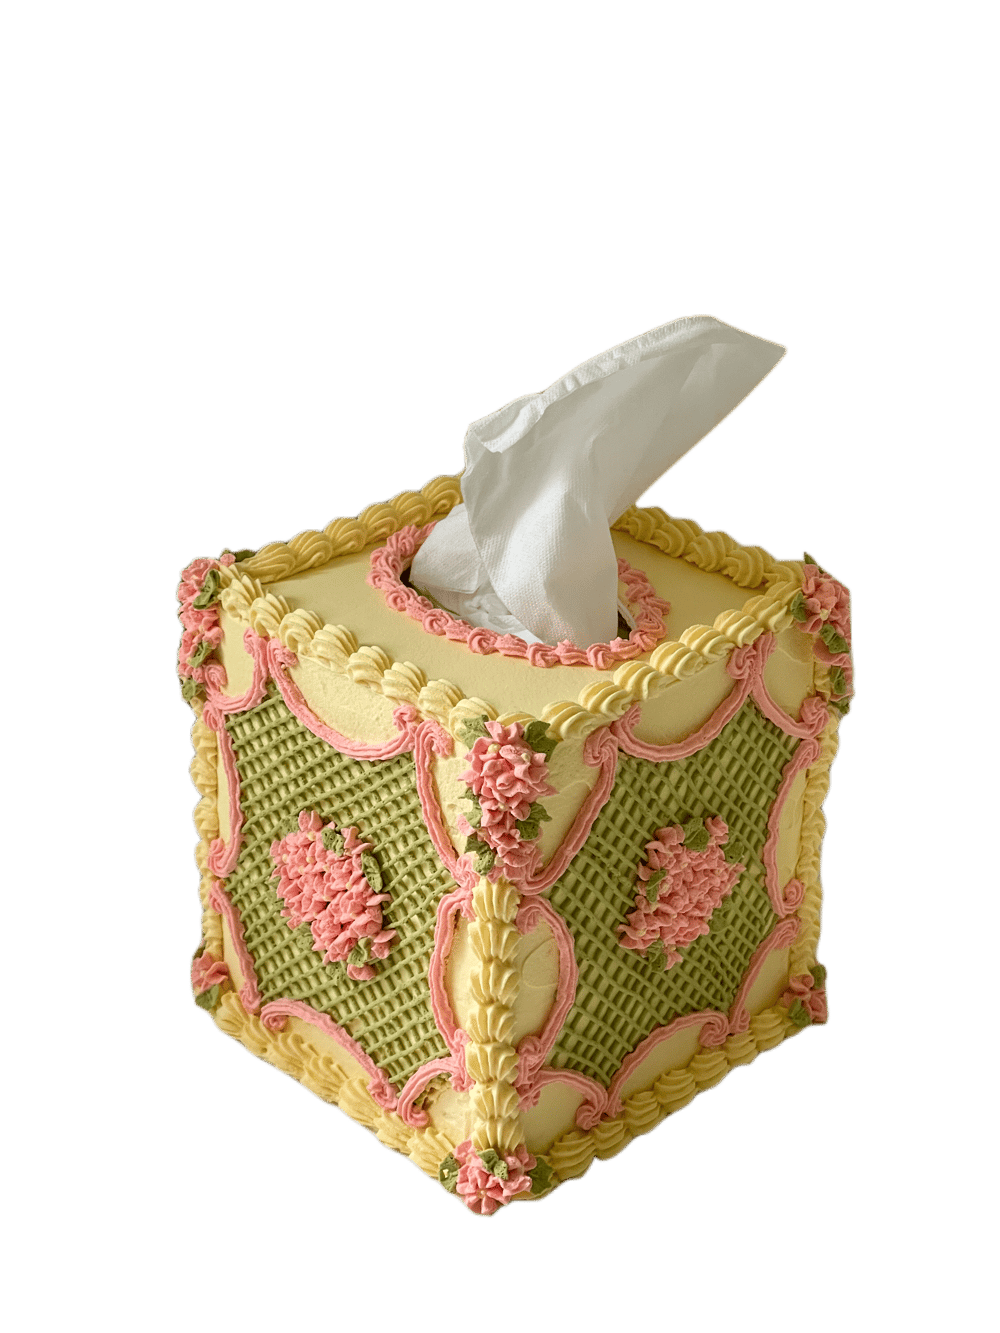 Image of Lattice Tissue Box